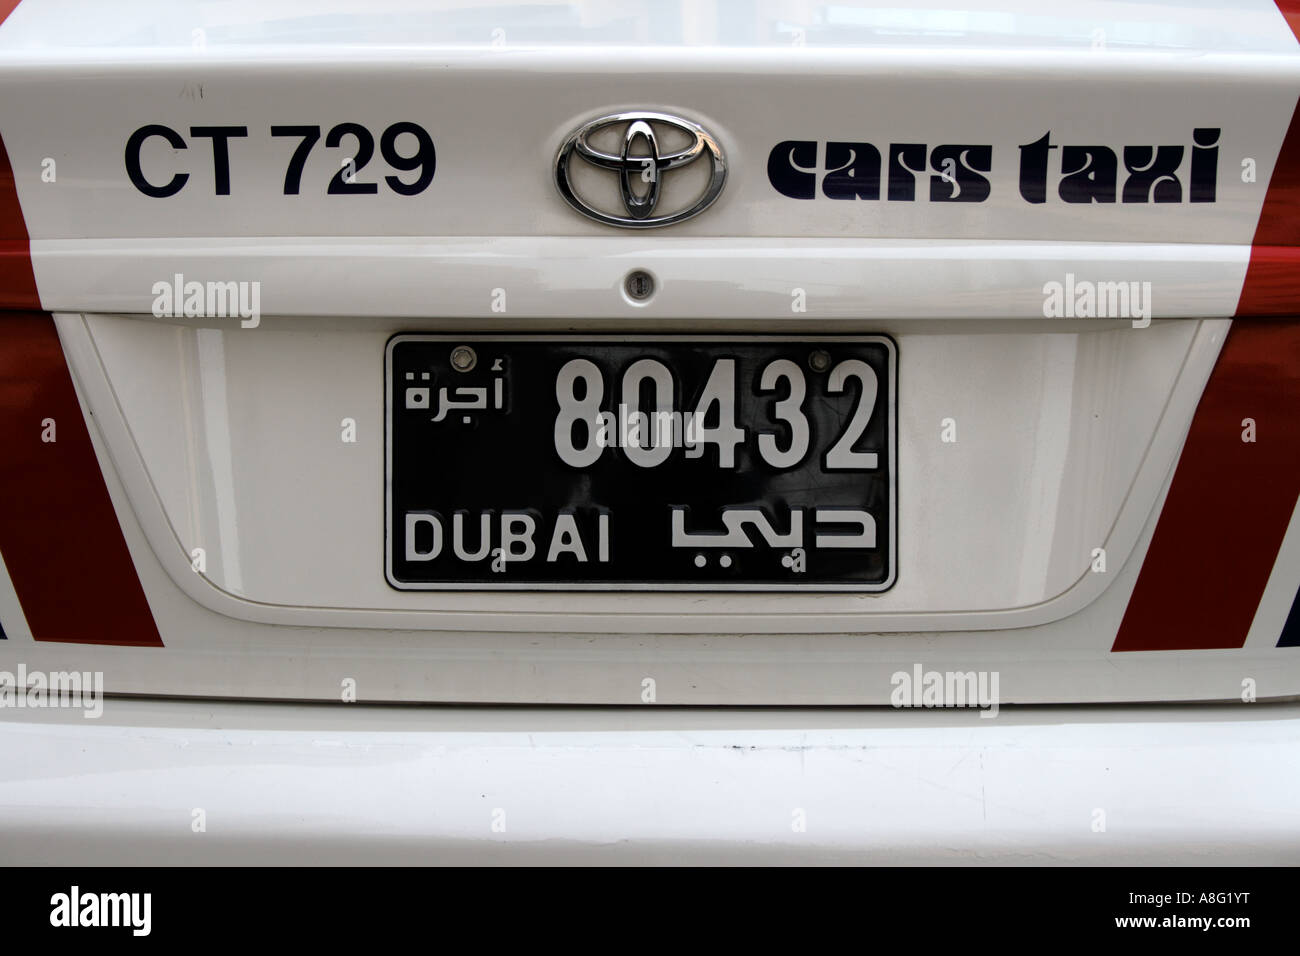 Taxi Auto mit Dubai-Kfz-Kennzeichen. Foto: Willy Matheisl Stockfoto